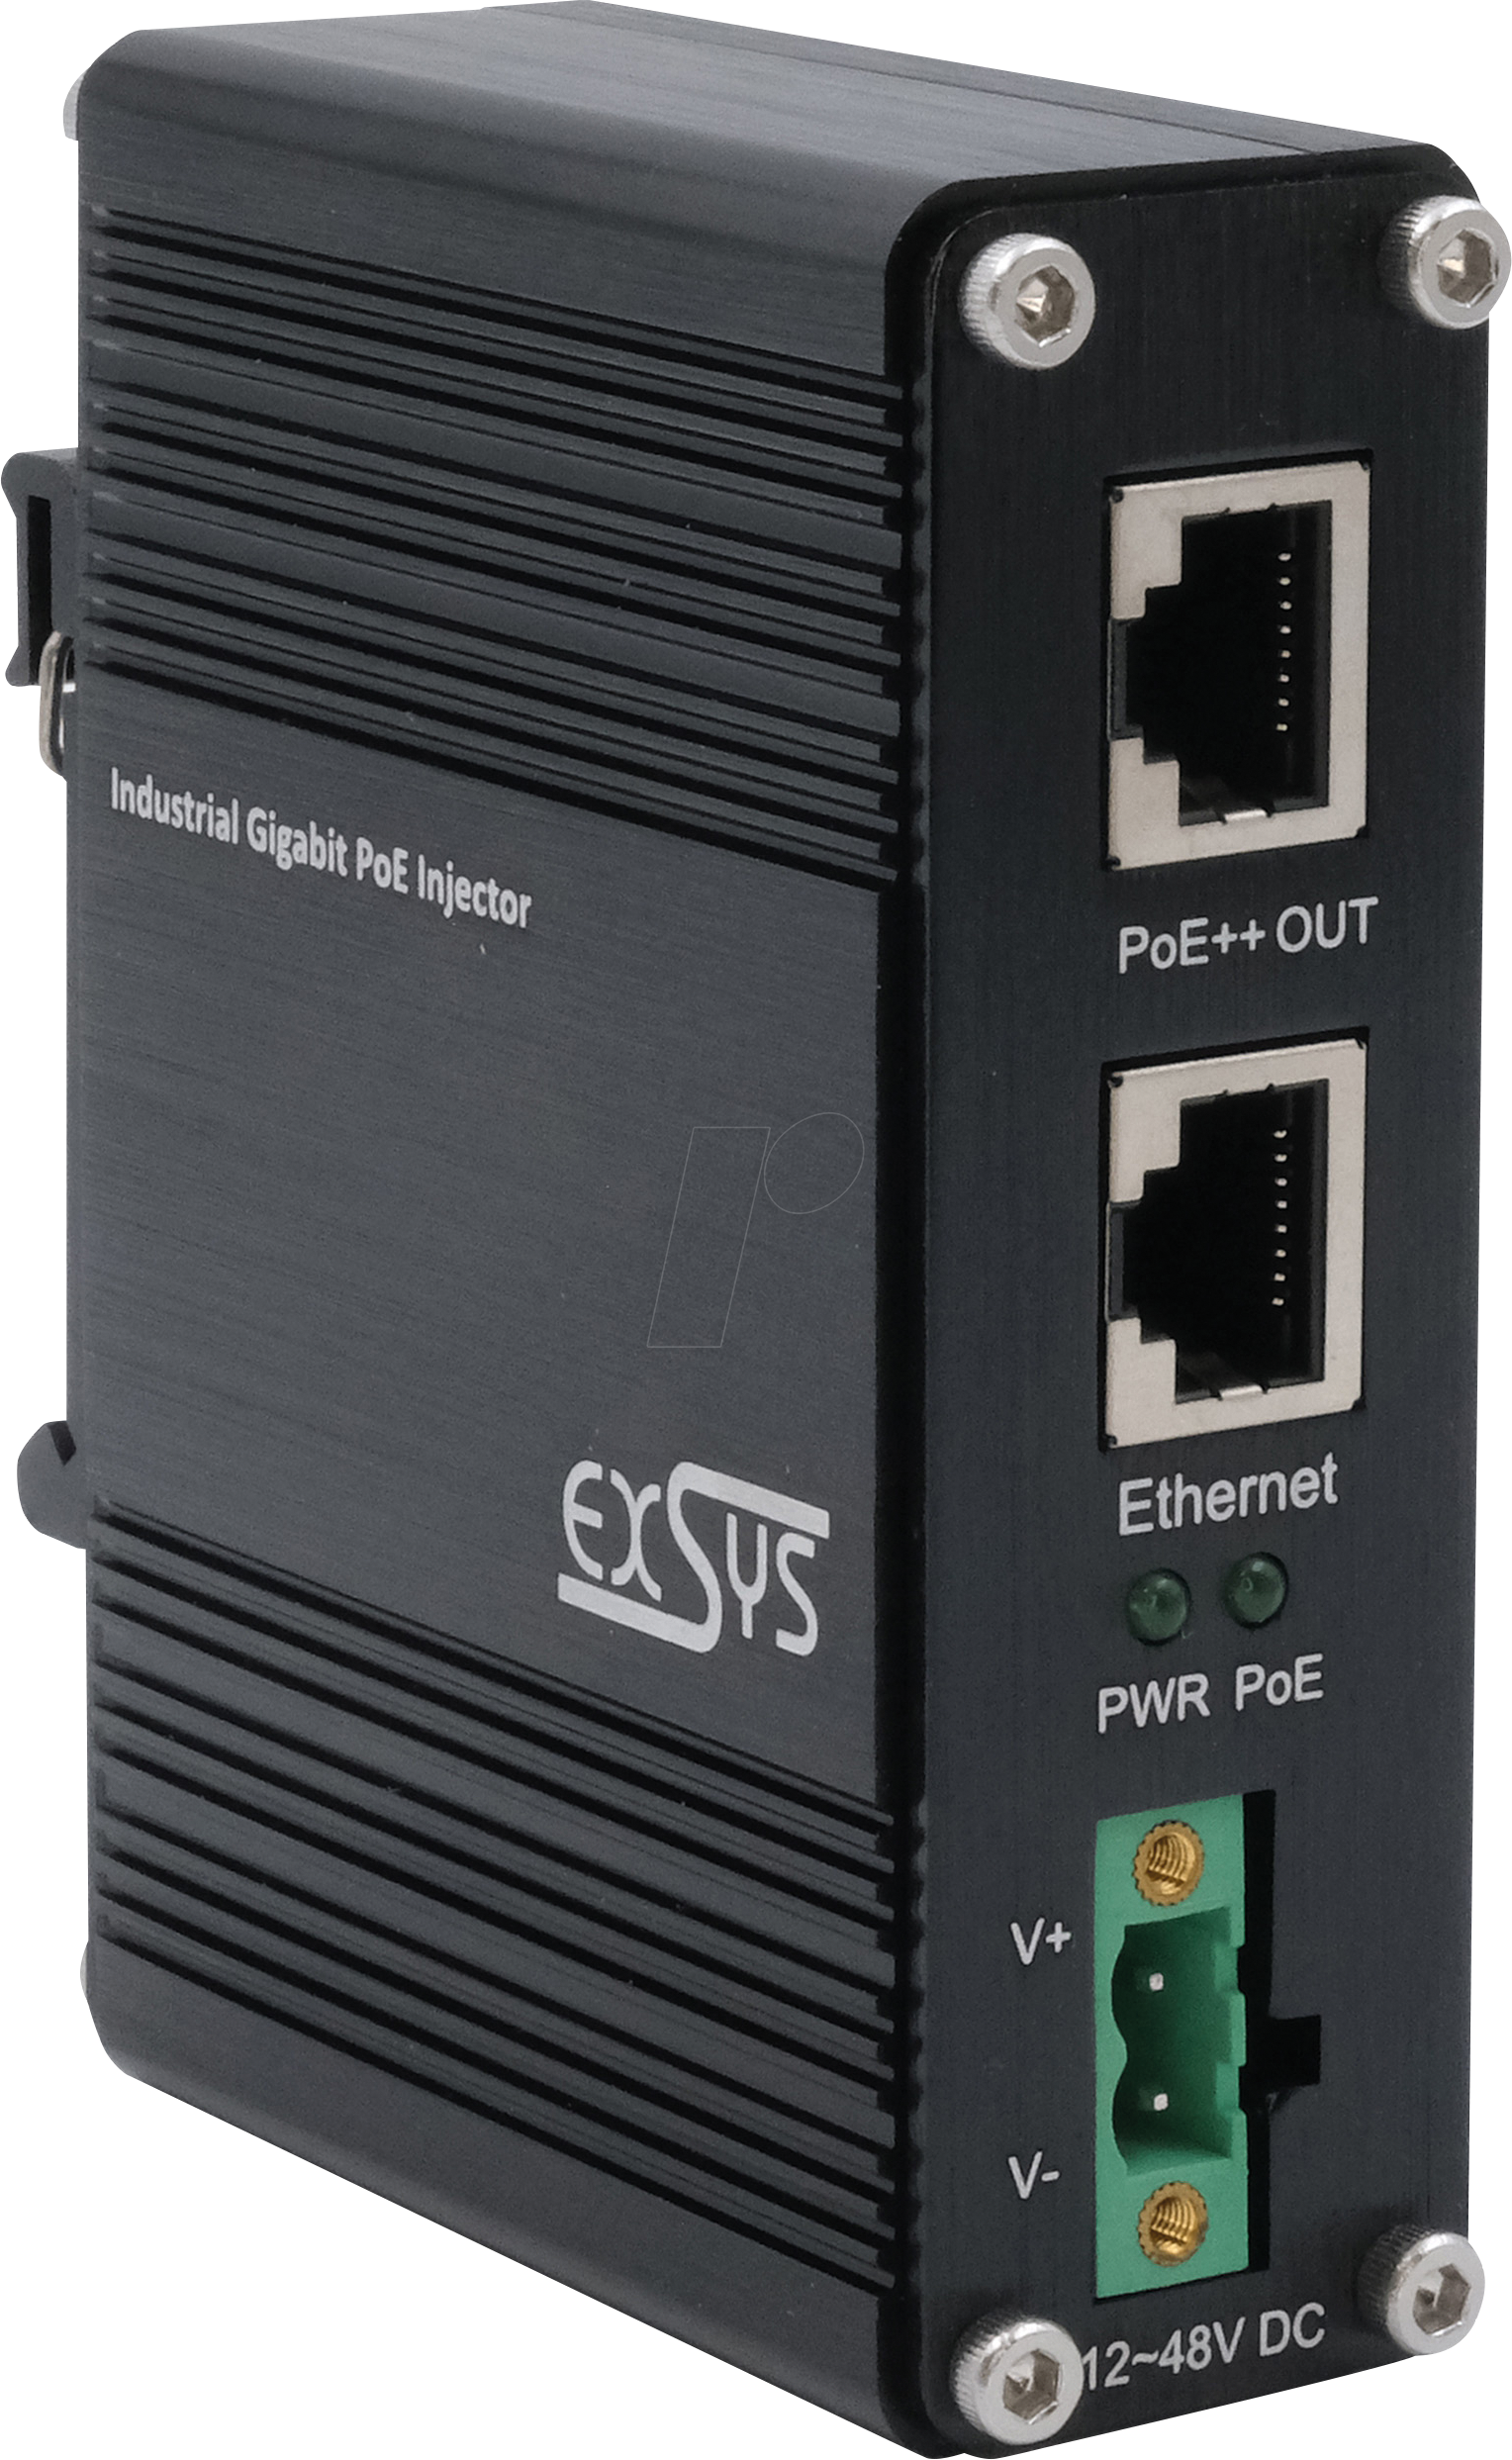 EXSYS EX-60315 - Power over Ethernet (PoE++) Gigabit Injektor, 90 W von EXSYS